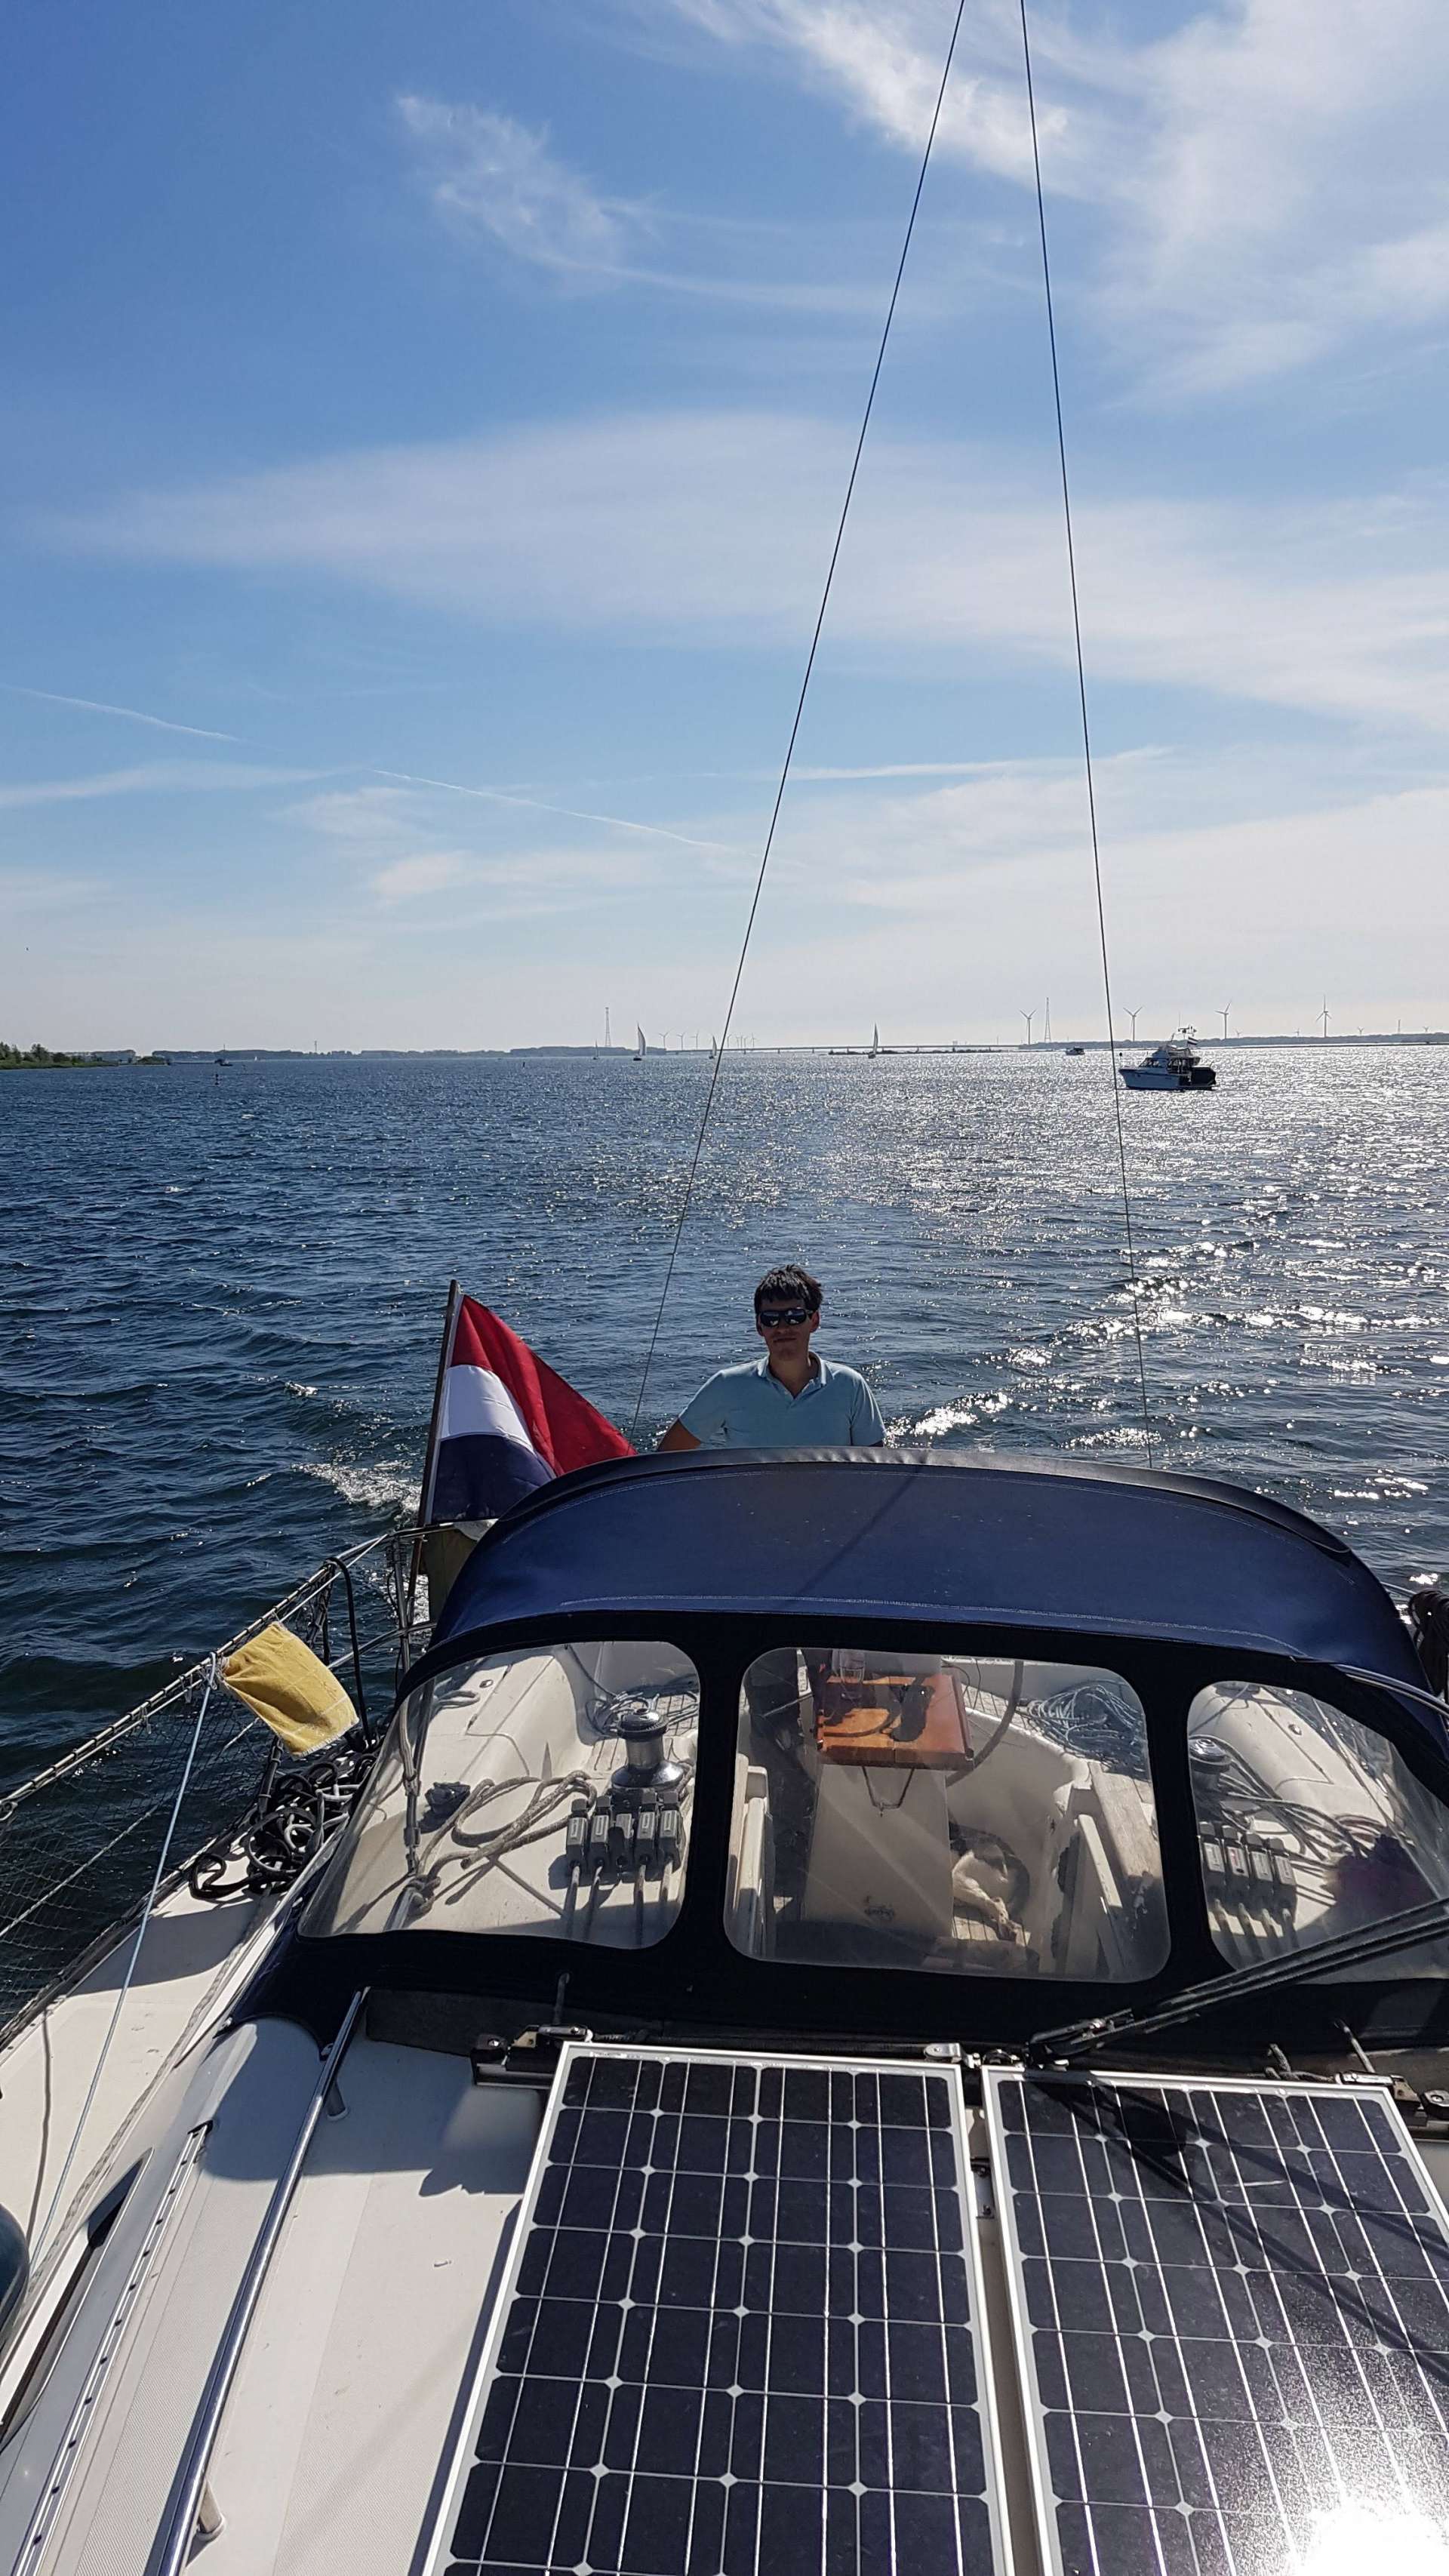 Ruim elektrisch familiejacht aan het Ketelmeer en IJsselmeer